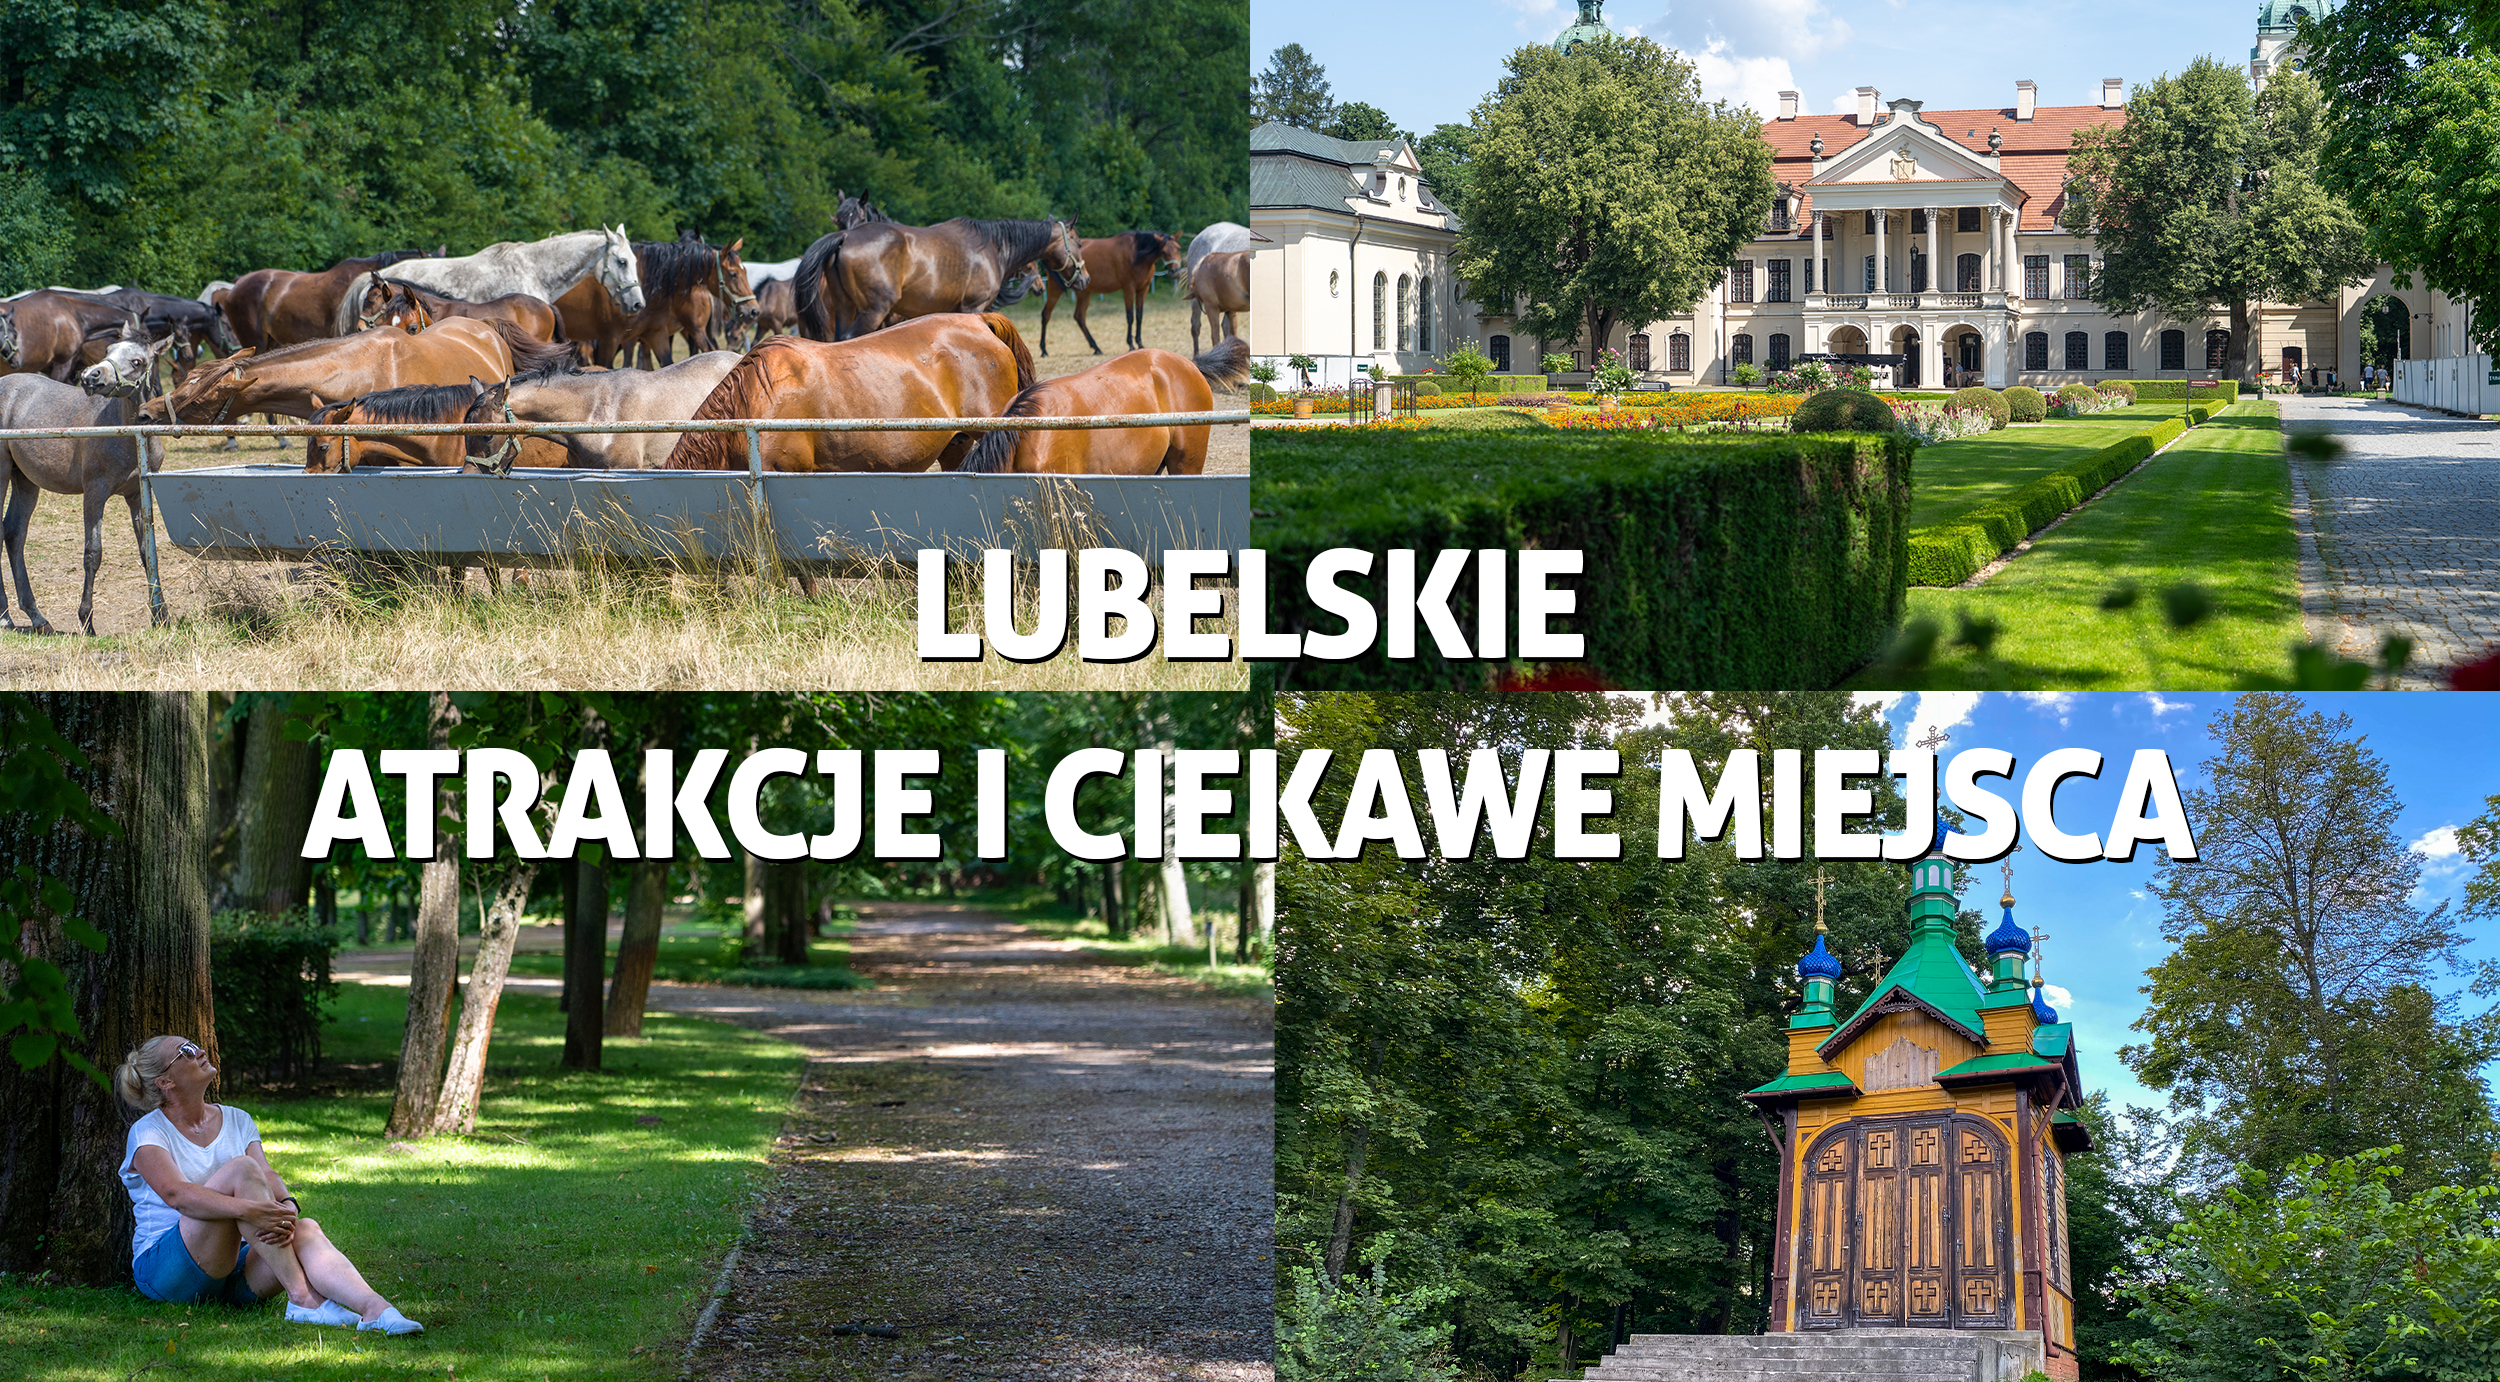 Lubelskie atrakcje - raj dla podróżników! Zwiedzanie atrakcji i ciekawych miejsc województwa lubelskiego